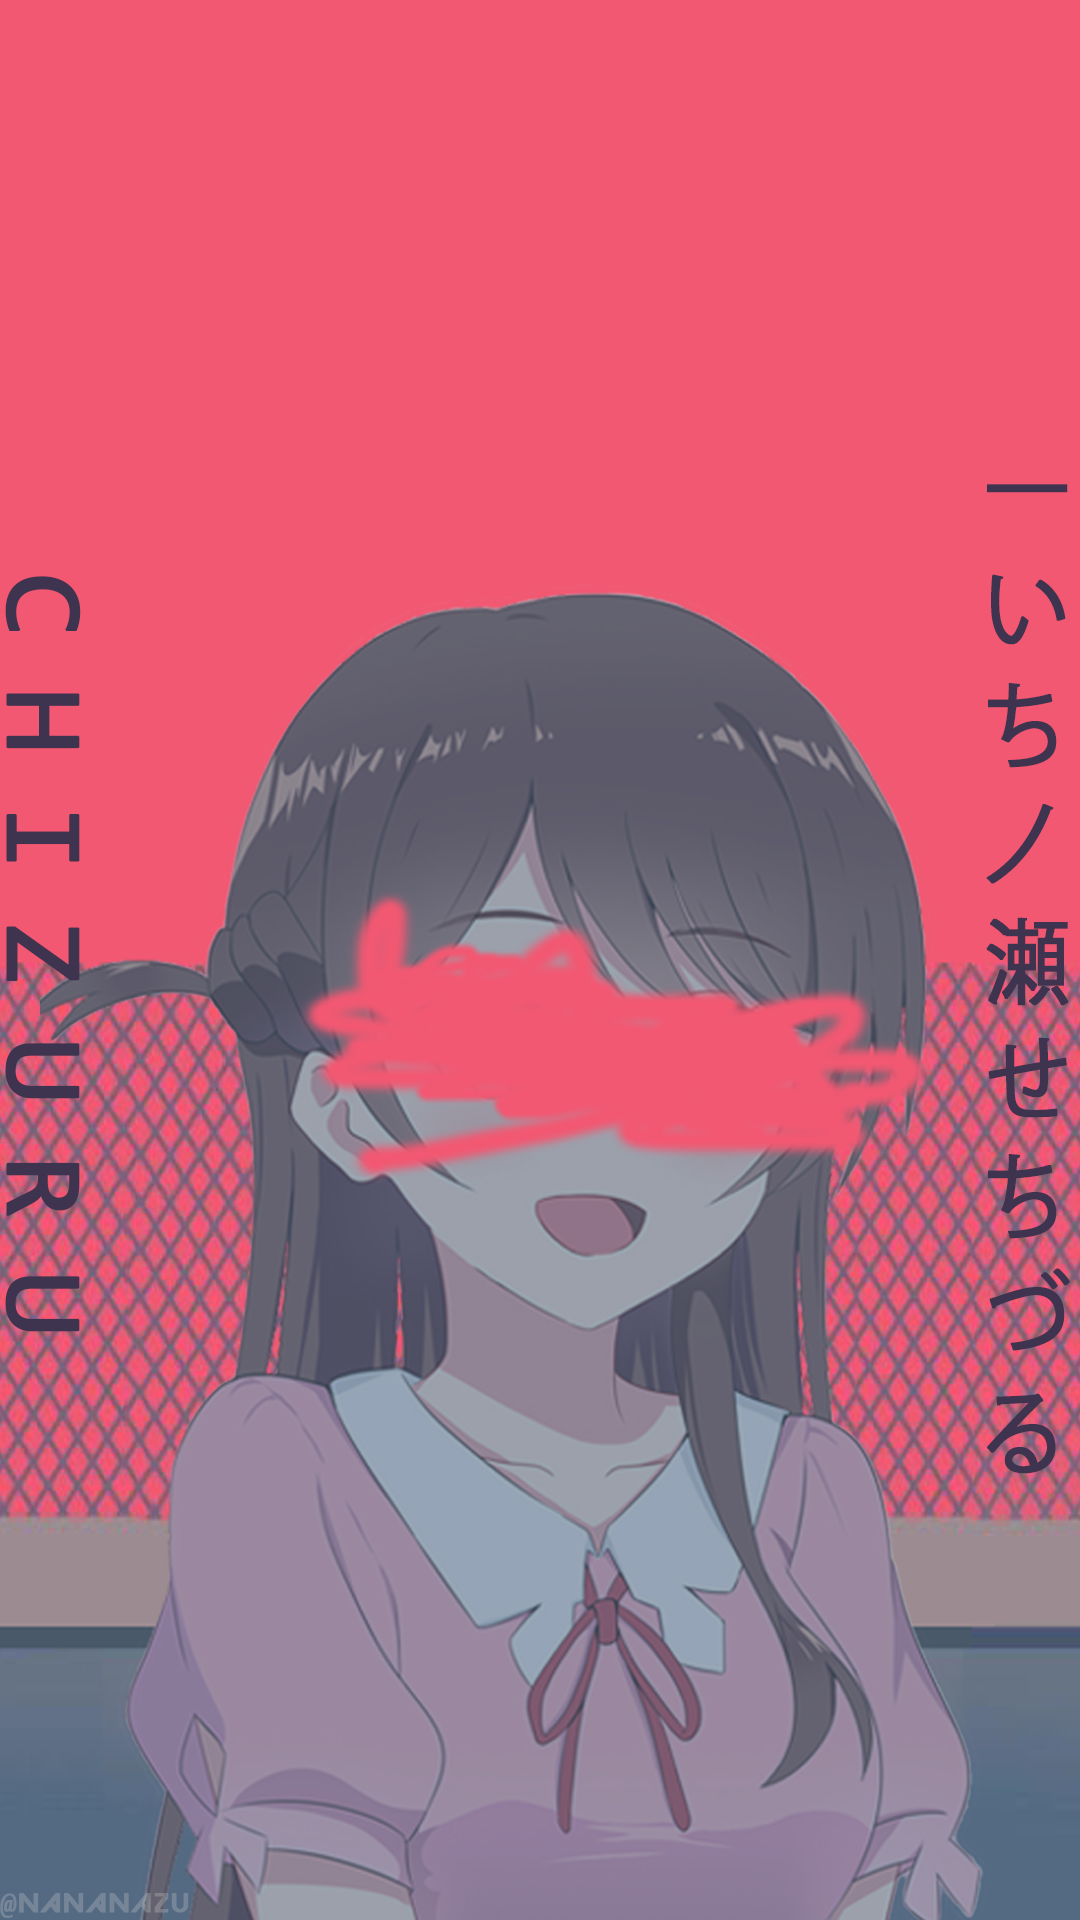 Ichinose Chizuru Yoasobi Wallpaper Android. Thicc anime, Anime art girl, Anime art